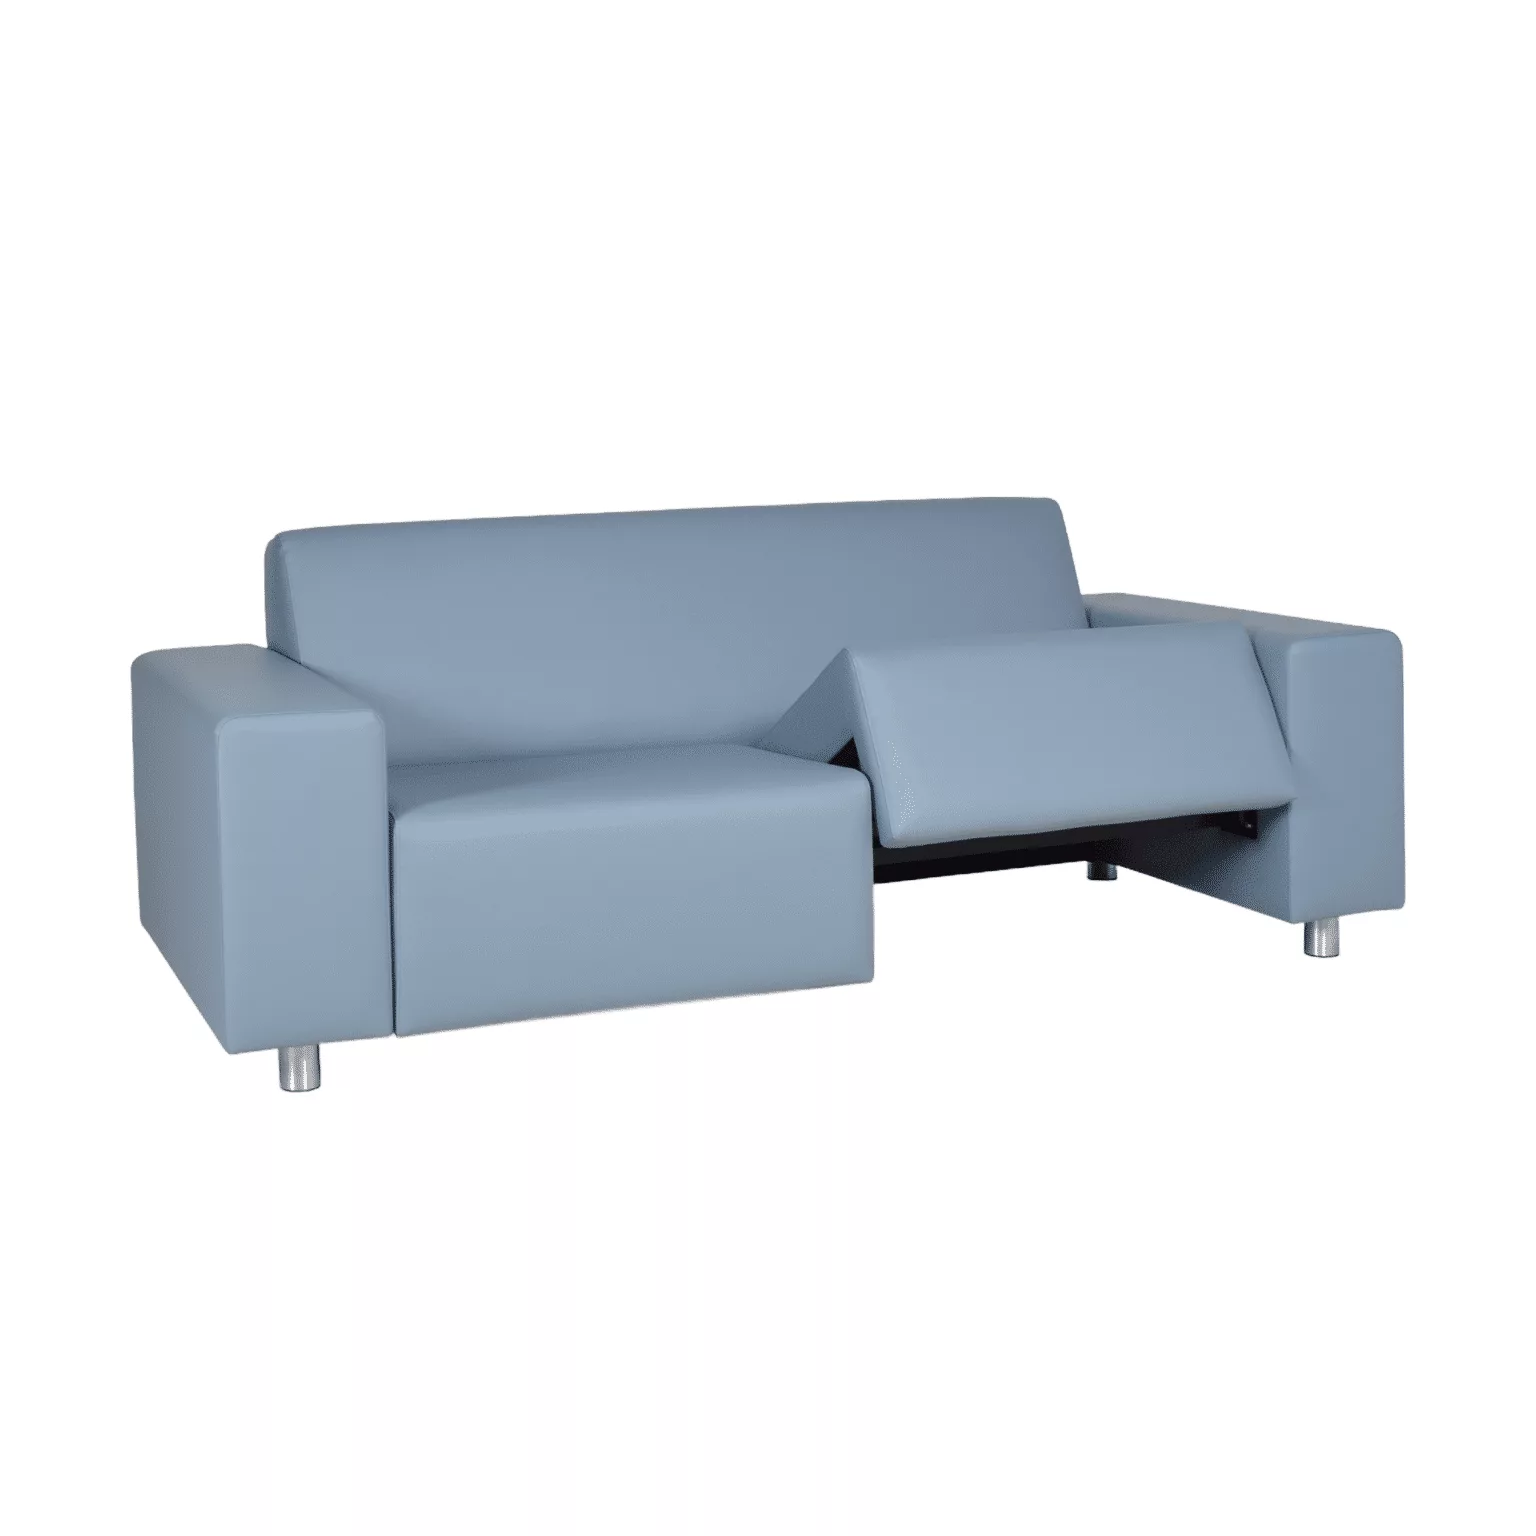 Lichtblauwe loungebank met brede armleuningen, uitneembare zitting en ronde metalen meubelpoten.